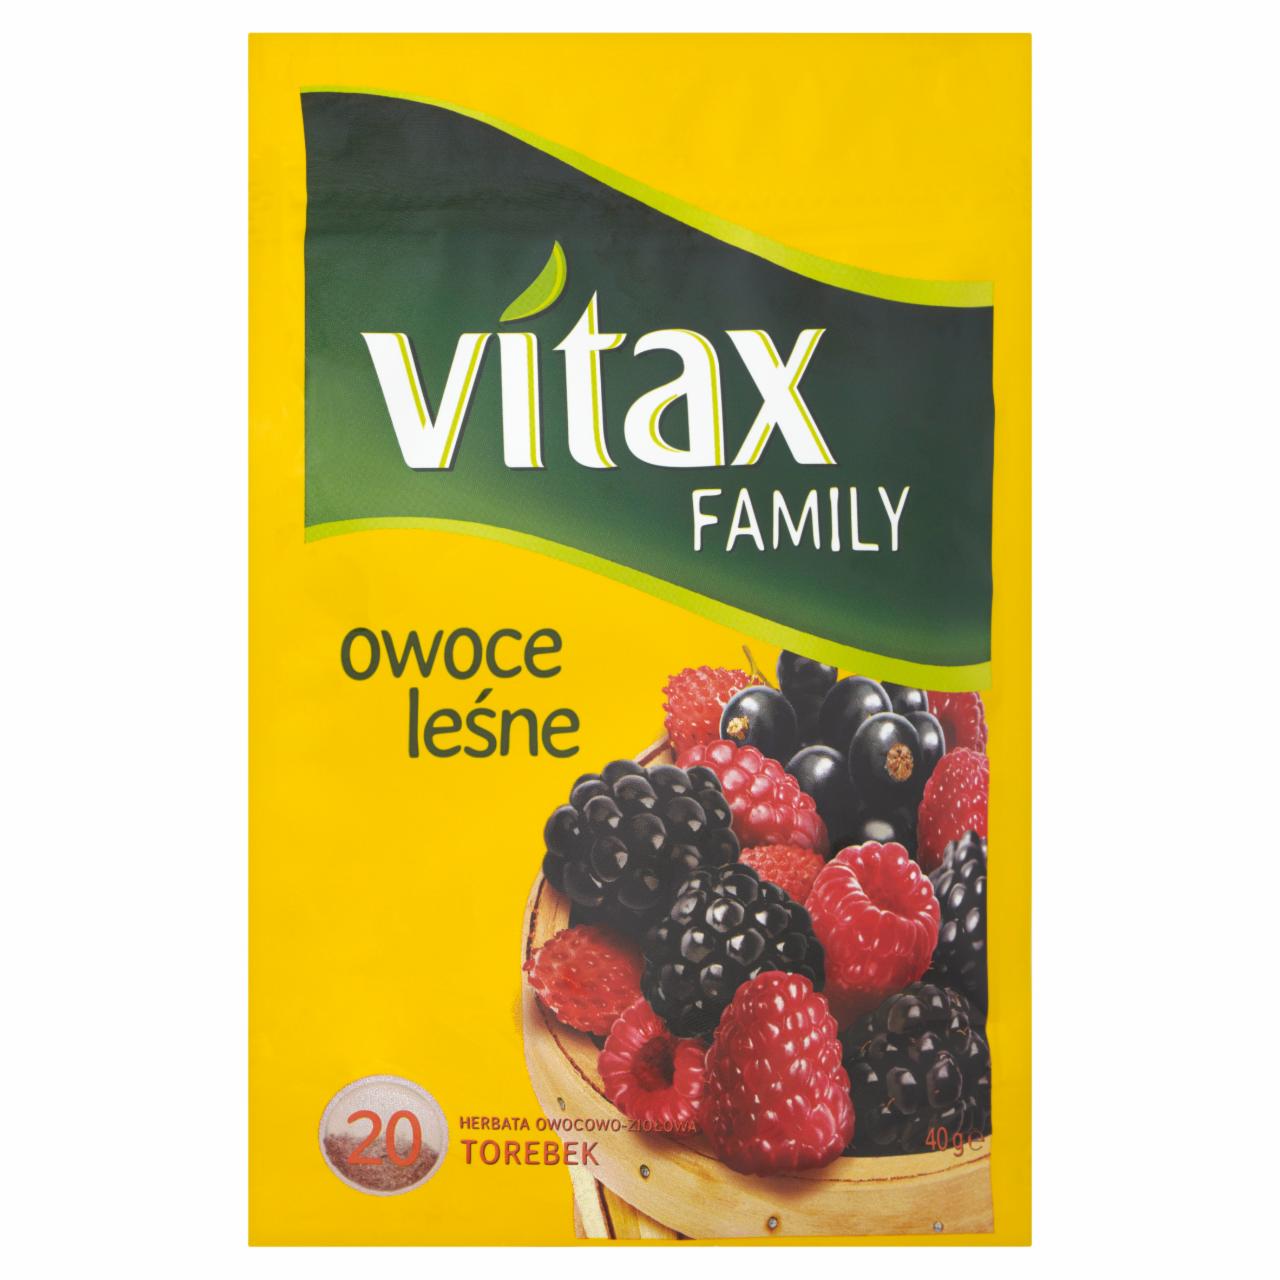 Zdjęcia - Vitax Family owoce leśne Herbata owocowo-ziołowa 40 g (20 torebek)